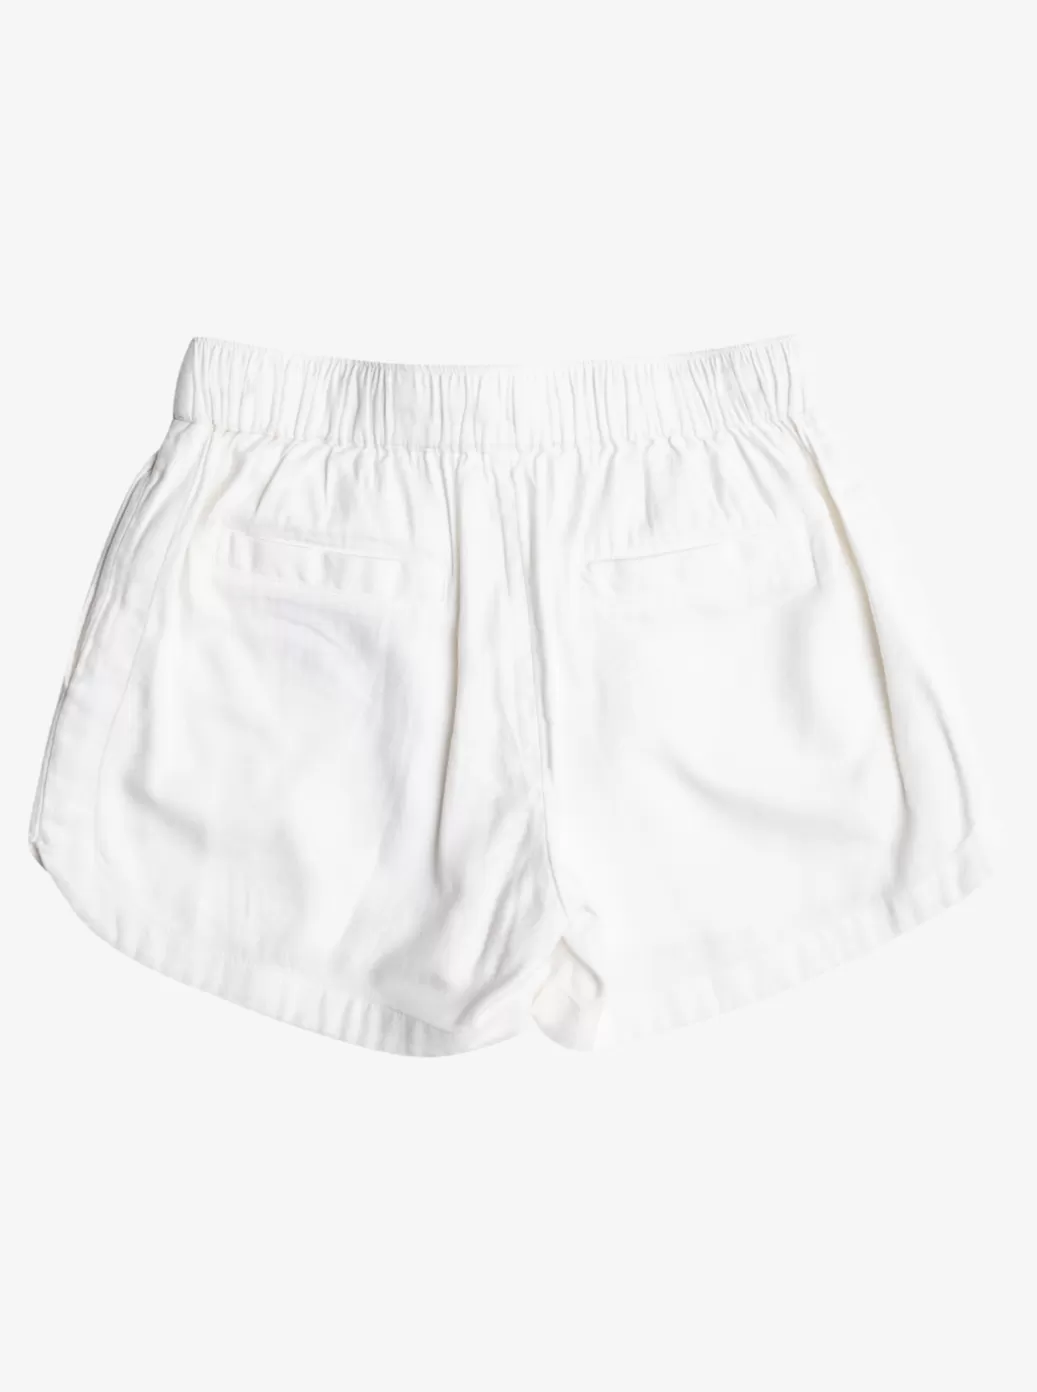 Skirts & Shorts | KIDS ROXY Girl's 4-16 Una Mattina Elastic Waist Shorts Snow White